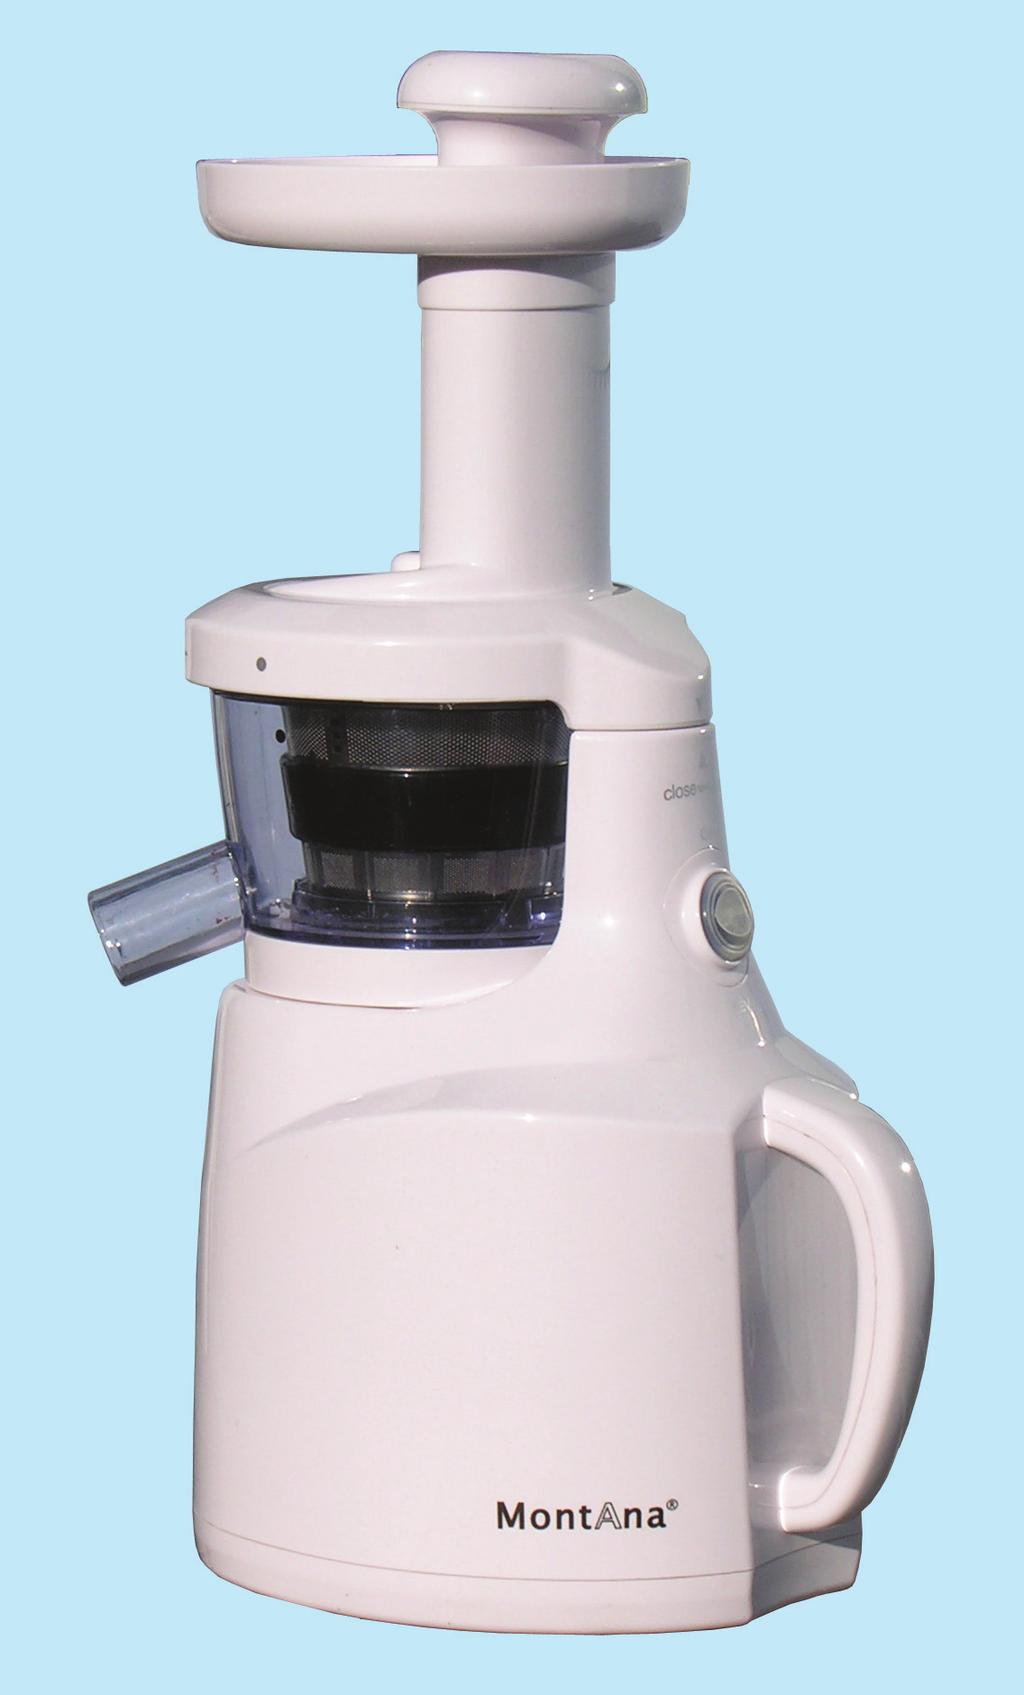 MontAna Slow Juicer Model PR-179 Bruksanvisning Endast för hushållsbruk -  PDF Free Download